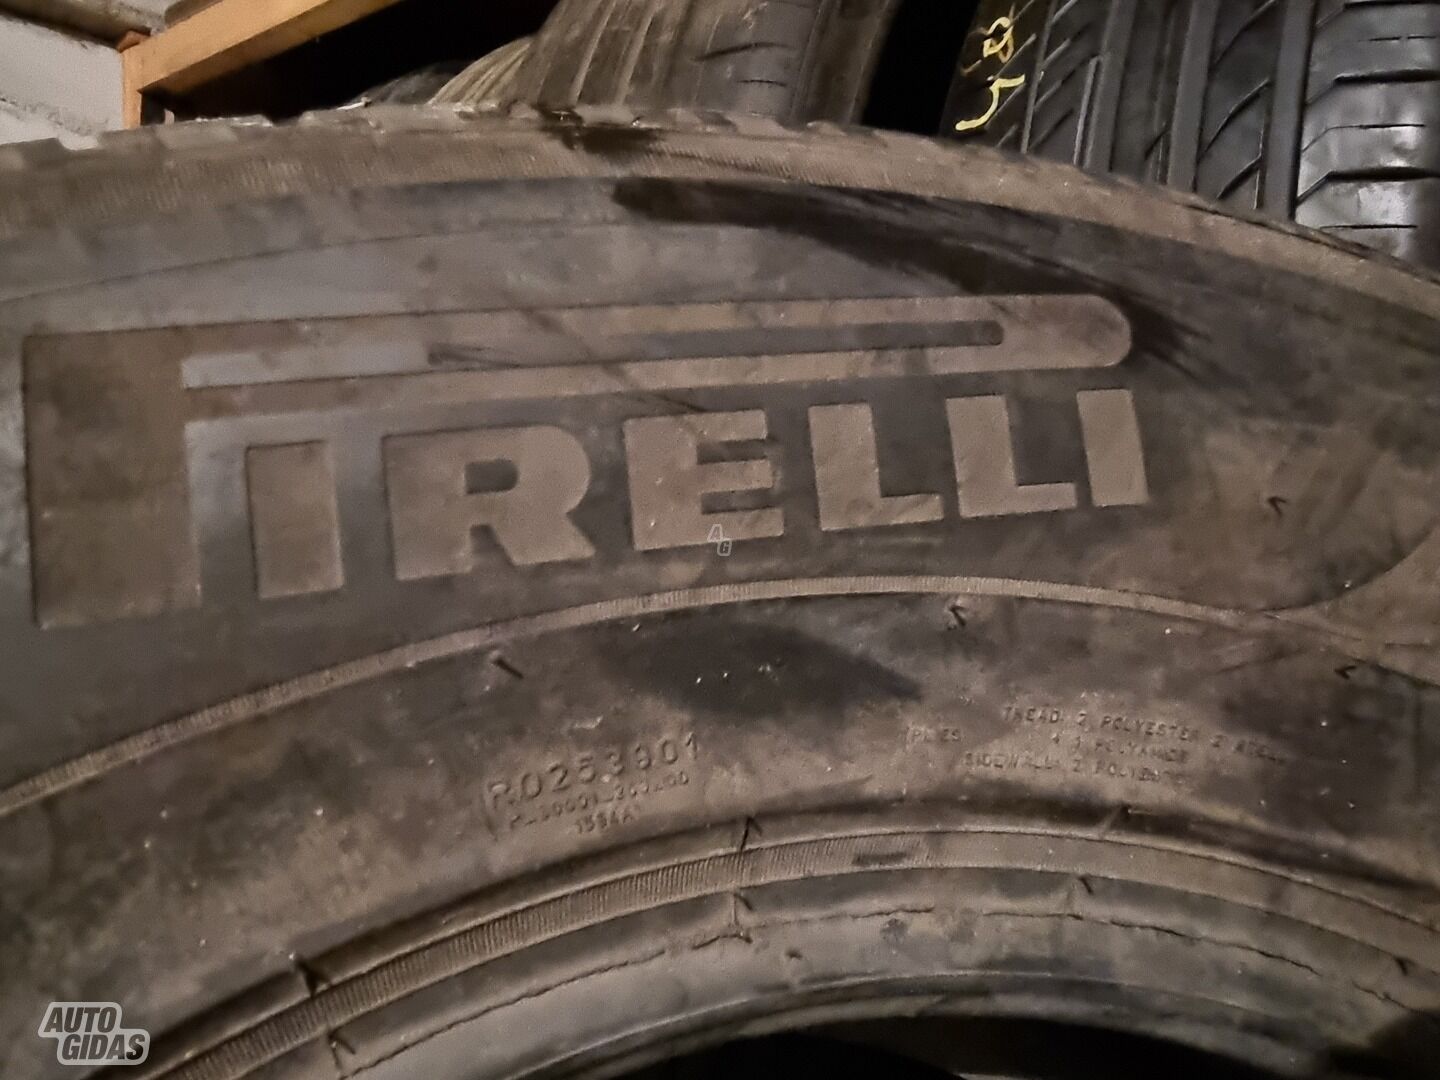 Pirelli Sotozero R17 winter tyres passanger car